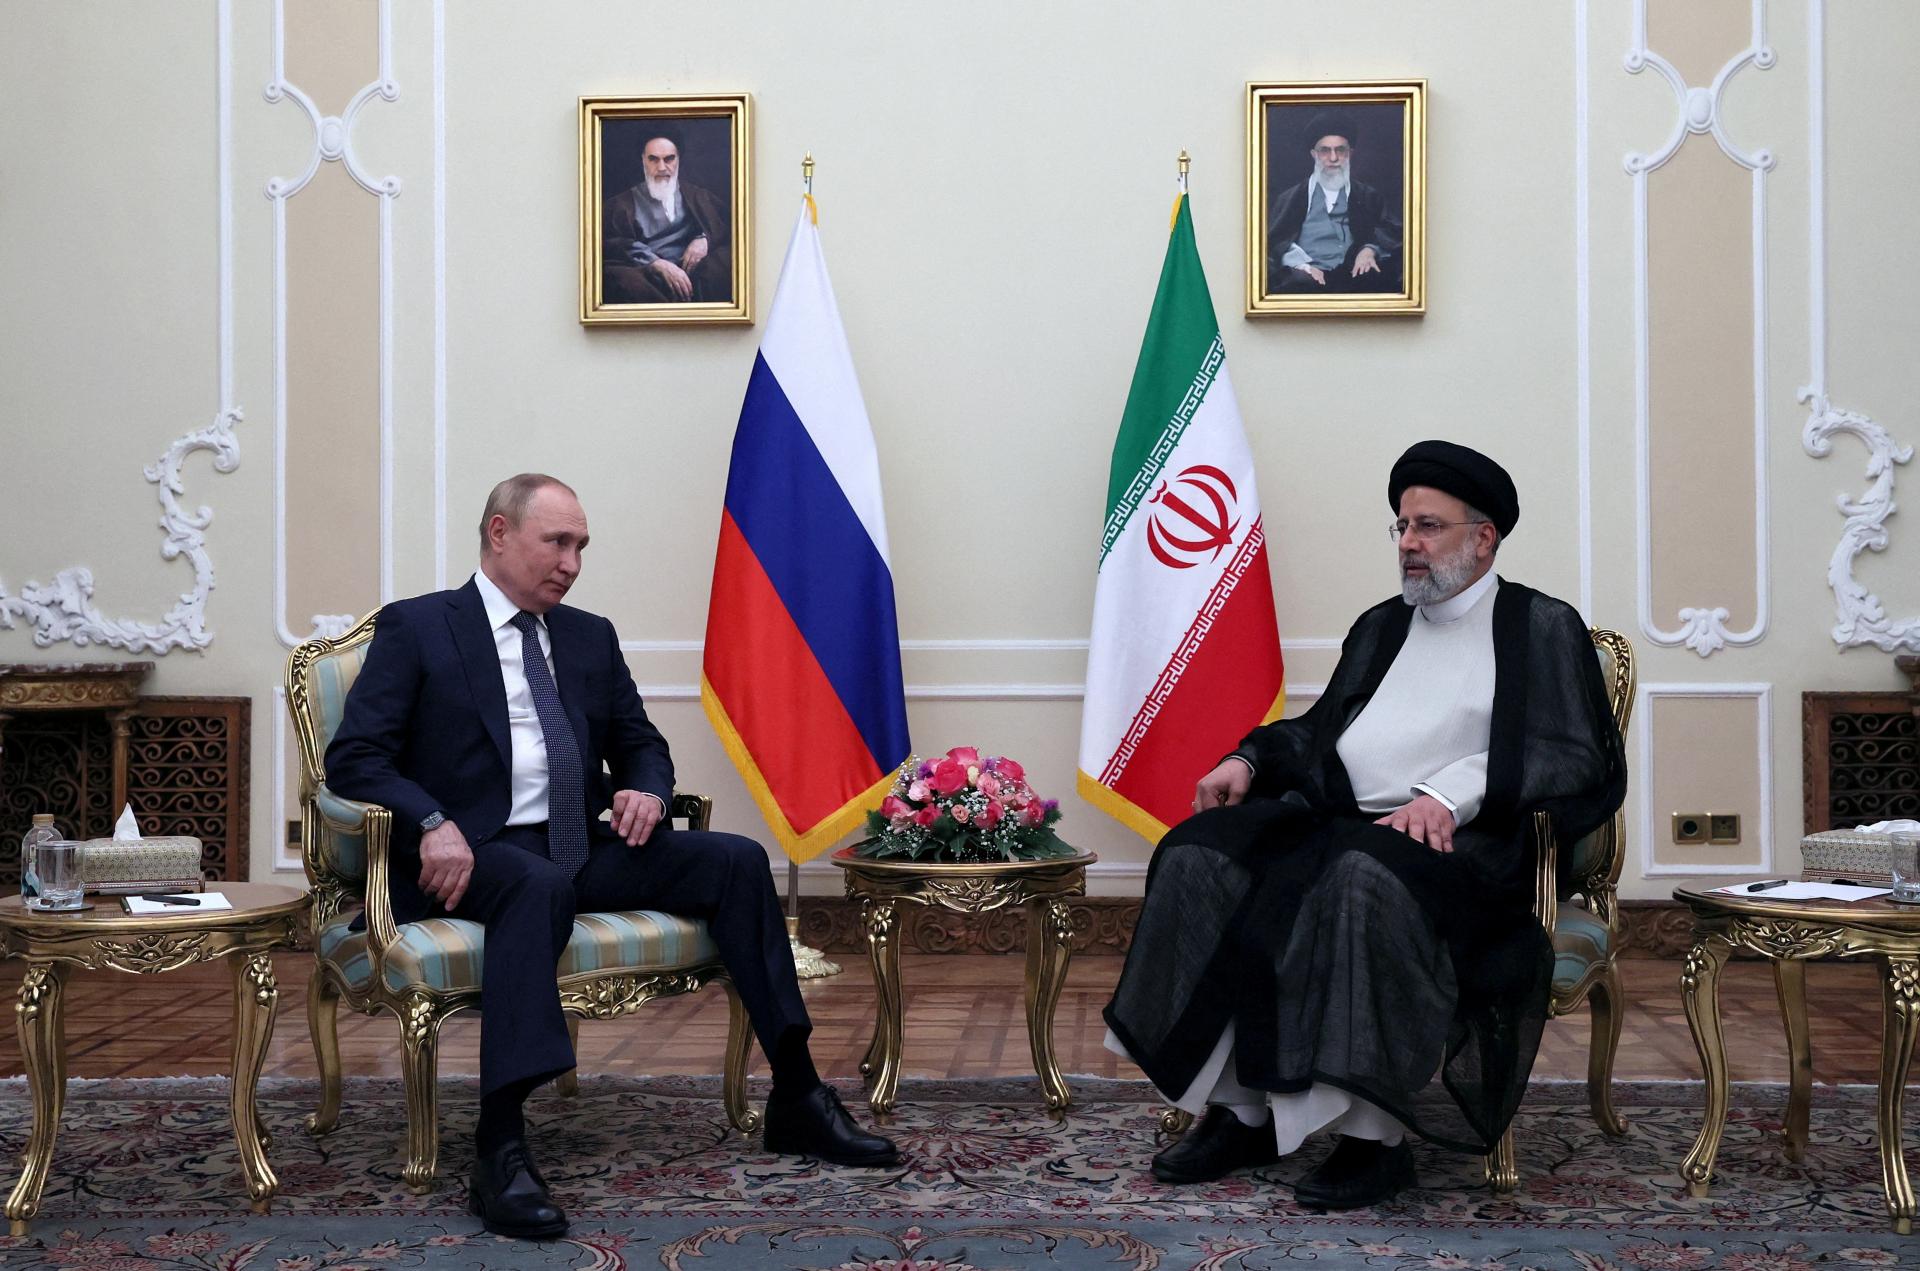 Irán dodal Rusku stovky balistických rakiet, píše Reuters. Ukrajina o tom nevie